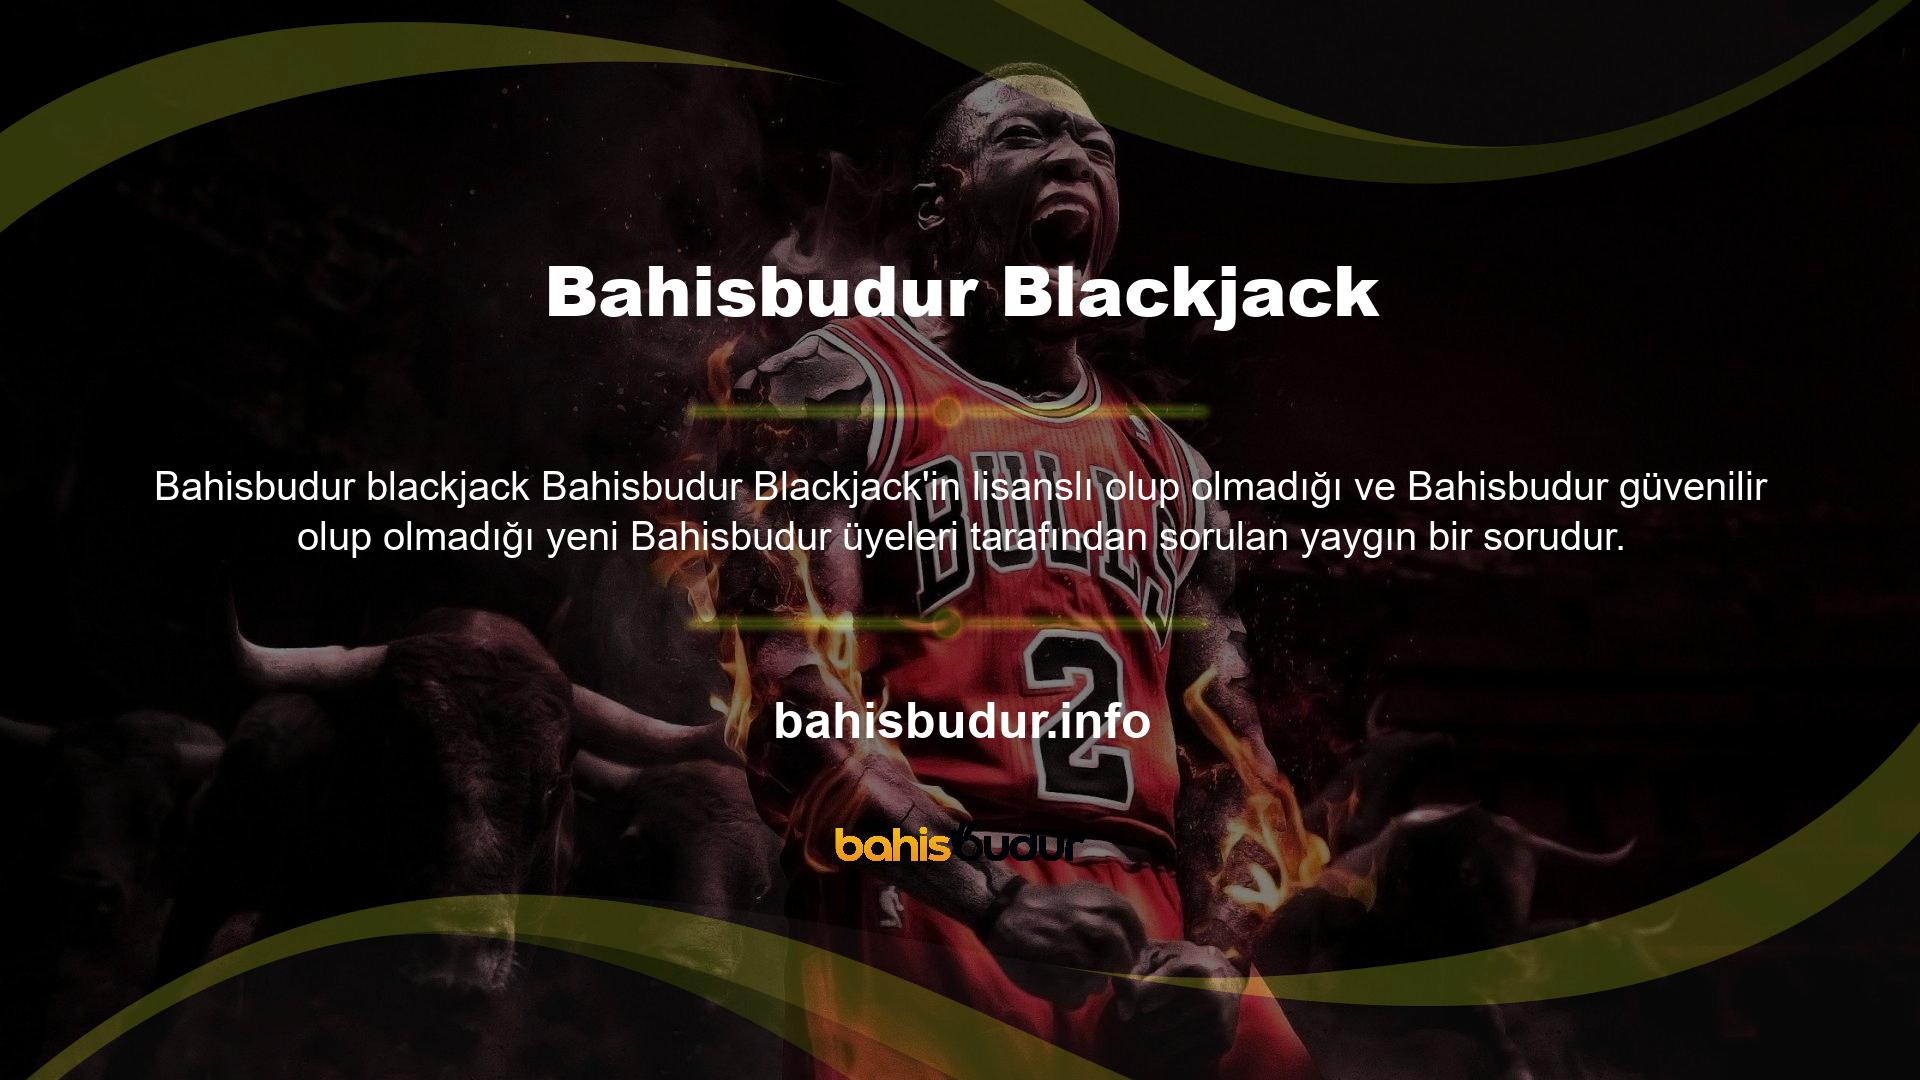 Türkiye’de oyun oynamak ve para bahsi yapmak isteyenlerin sevdiği siteye göz atarsanız Bahisbudur markasıyla karşılaşacaksınız